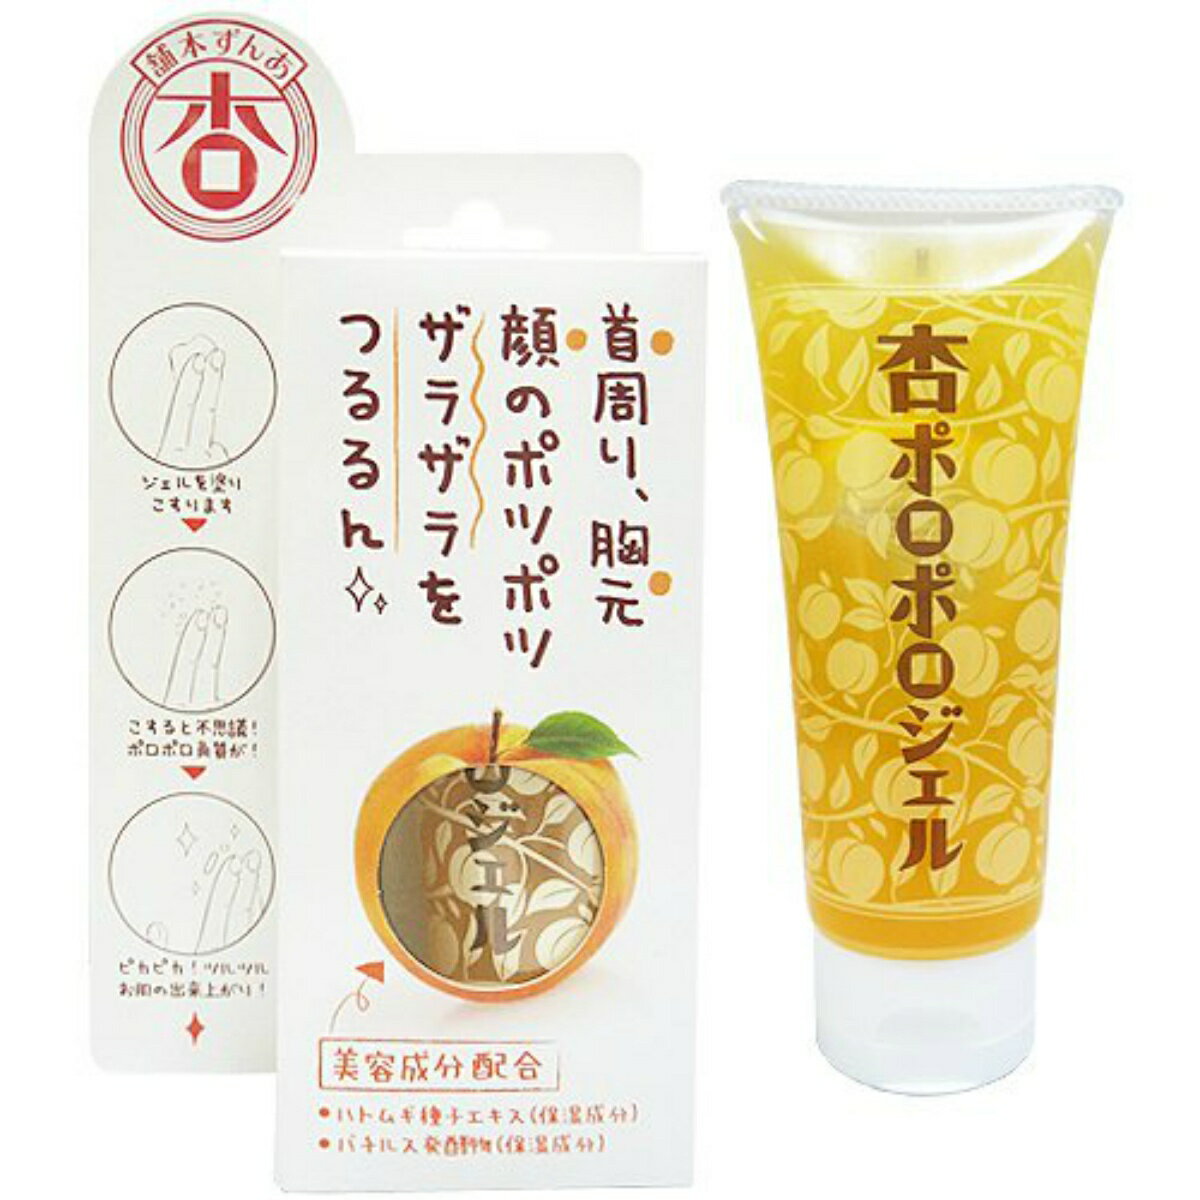 【三和通商】あんず本舗 杏ポロポロジェル100g 日本製 杏の香るピーリングジェル  4543268072878 